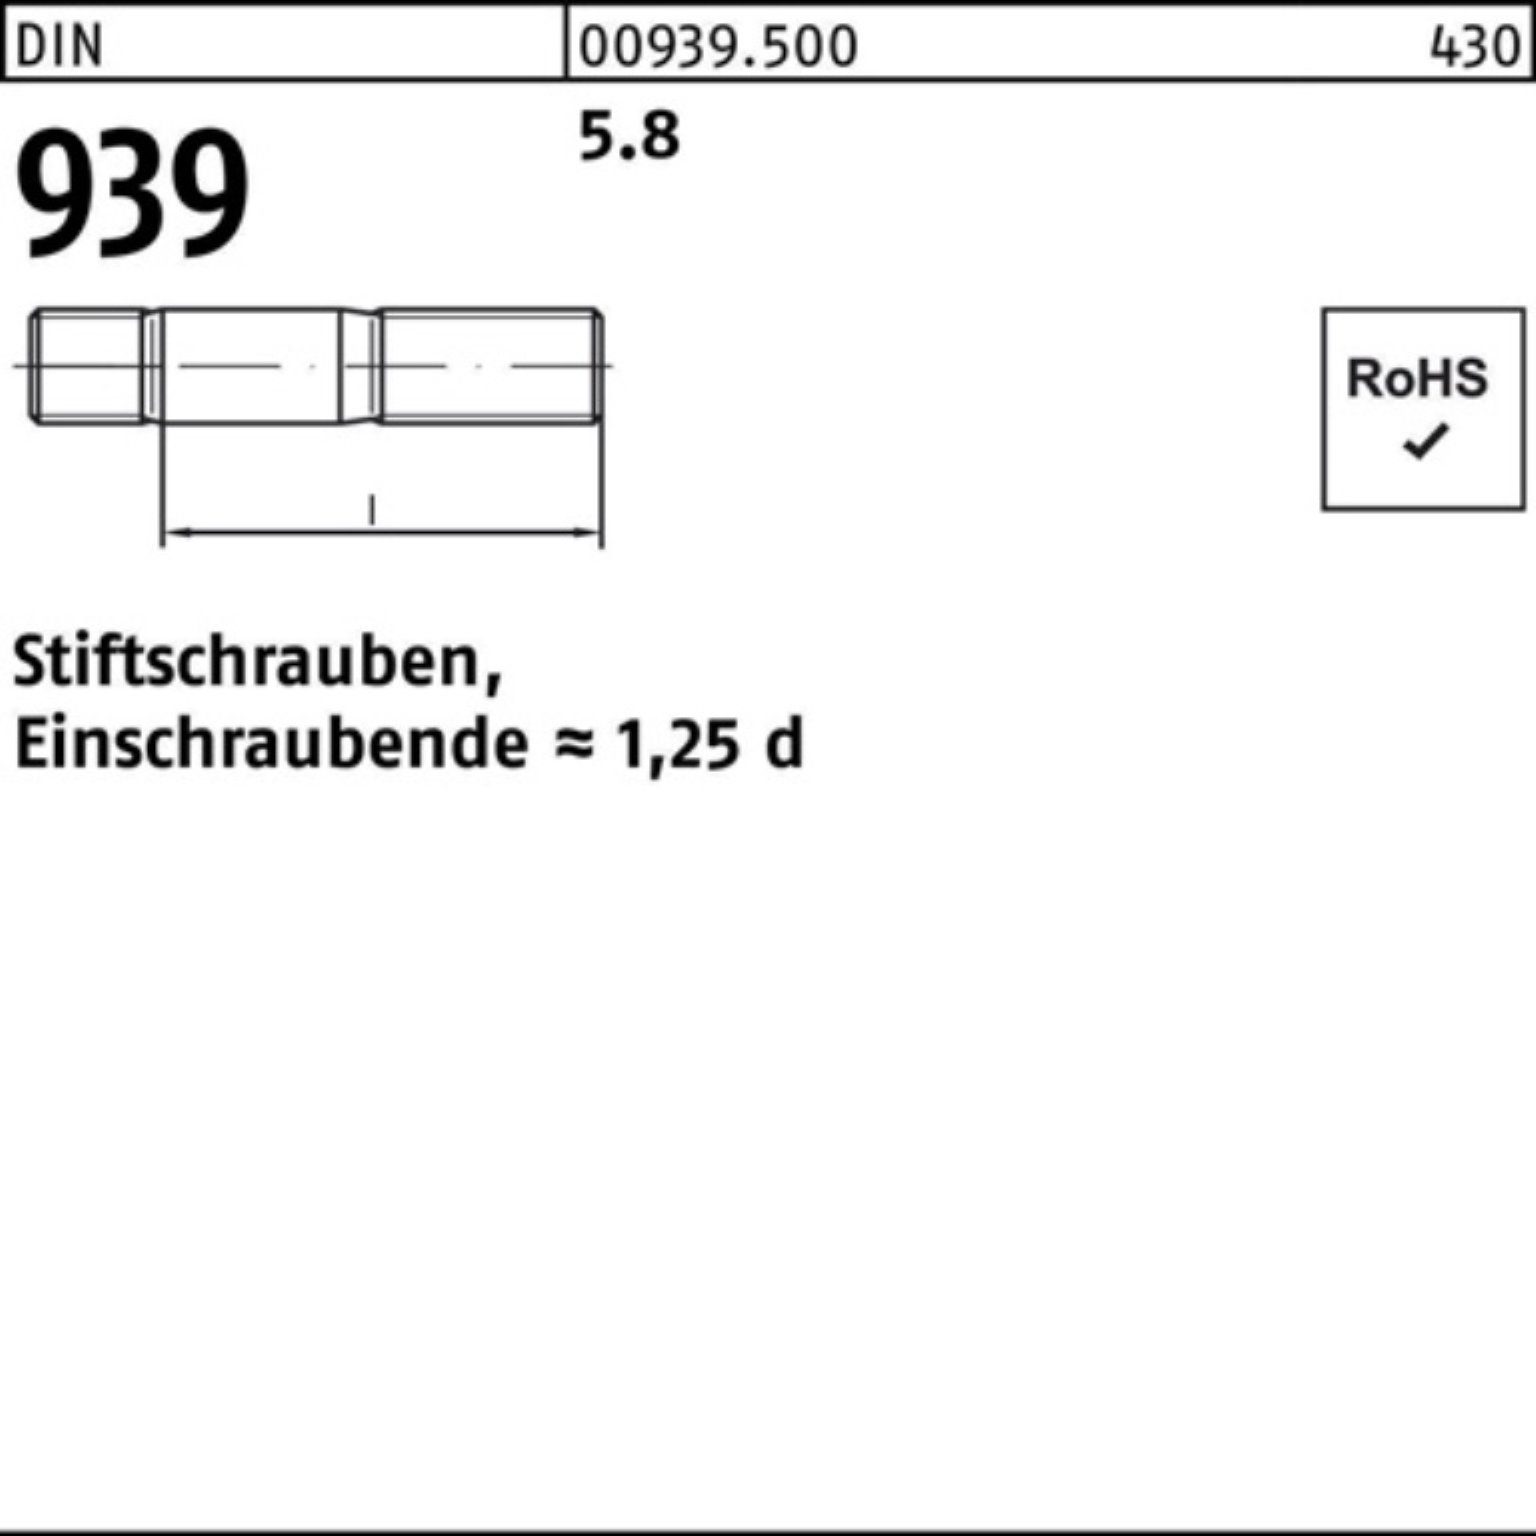 M10x 75 DIN 100er S Stiftschraube Stiftschraube 50 Reyher 5.8 939 Einschraubende=1,25d Pack